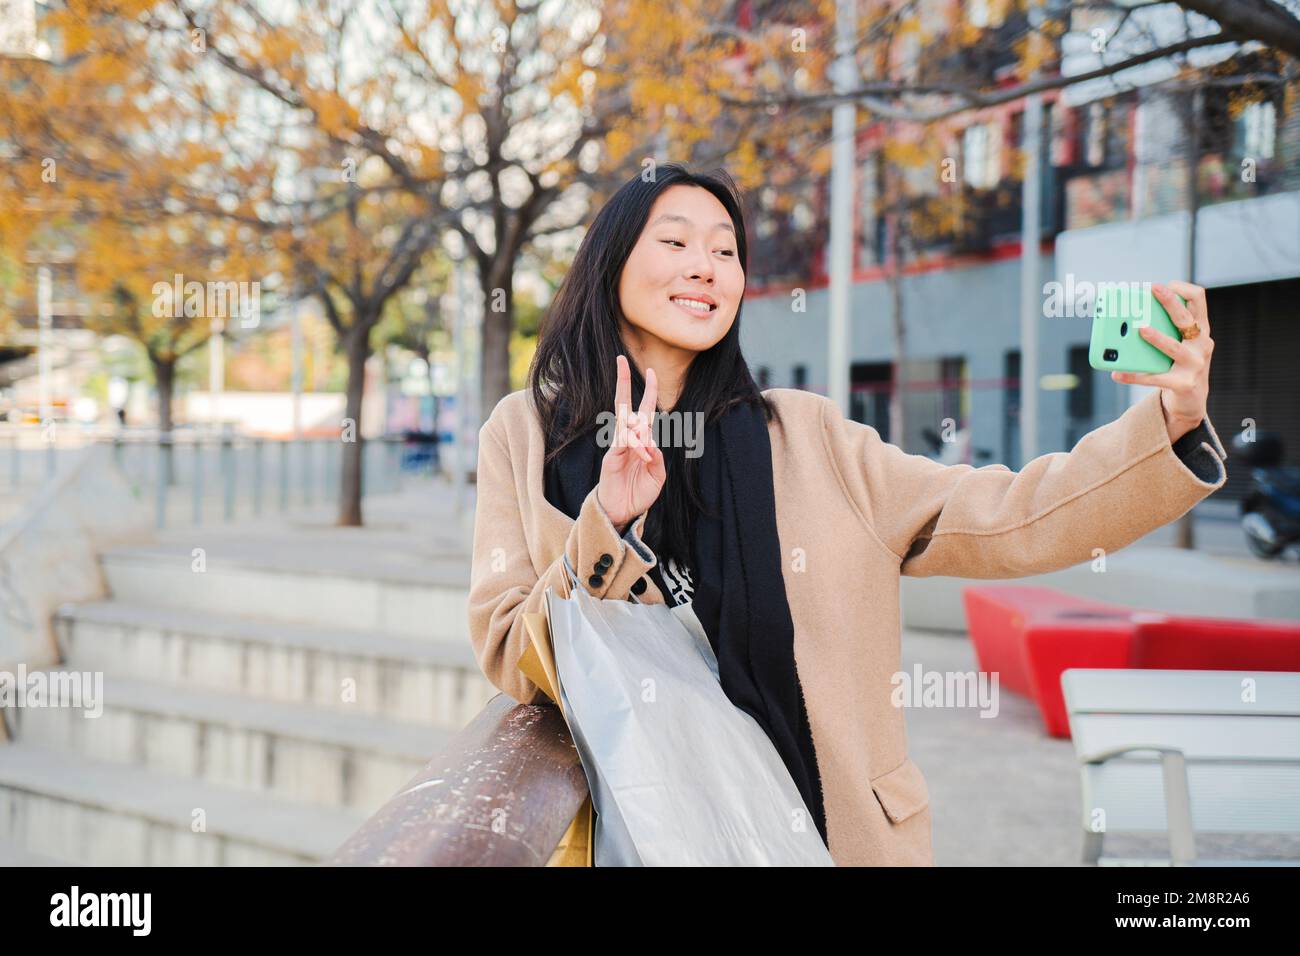 Fröhliche junge chinesin oder Asiatin, die lächelt und ein Selfie-Porträt macht, das Friedenszeichen auf dem Handy macht, nachdem sie eingekauft und über die sozialen Medien mit einer Smartphone-App geteilt hat. Hochwertiges Foto Stockfoto